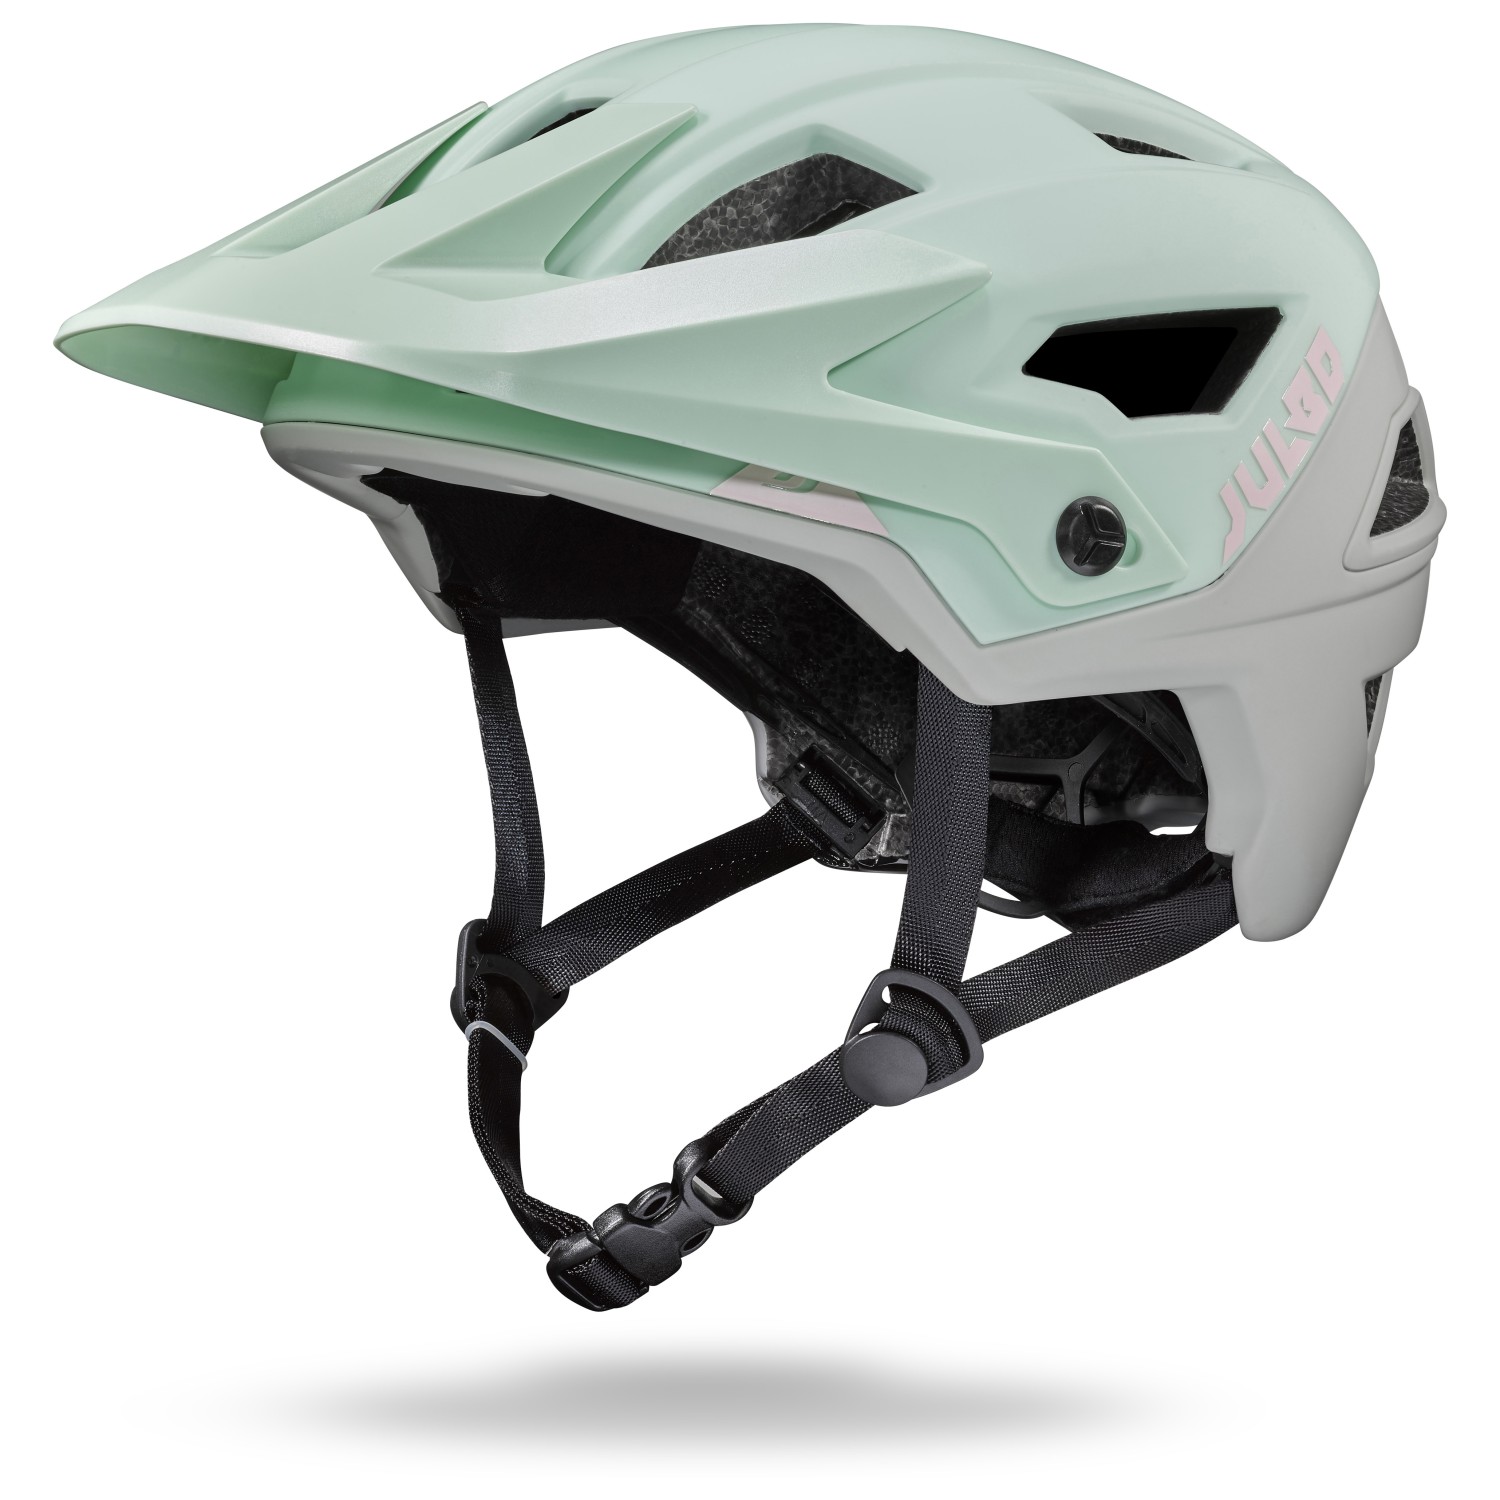 Велосипедный шлем Julbo Rock, цвет Mint/Grey ключ велосипедный dorkel универсальный